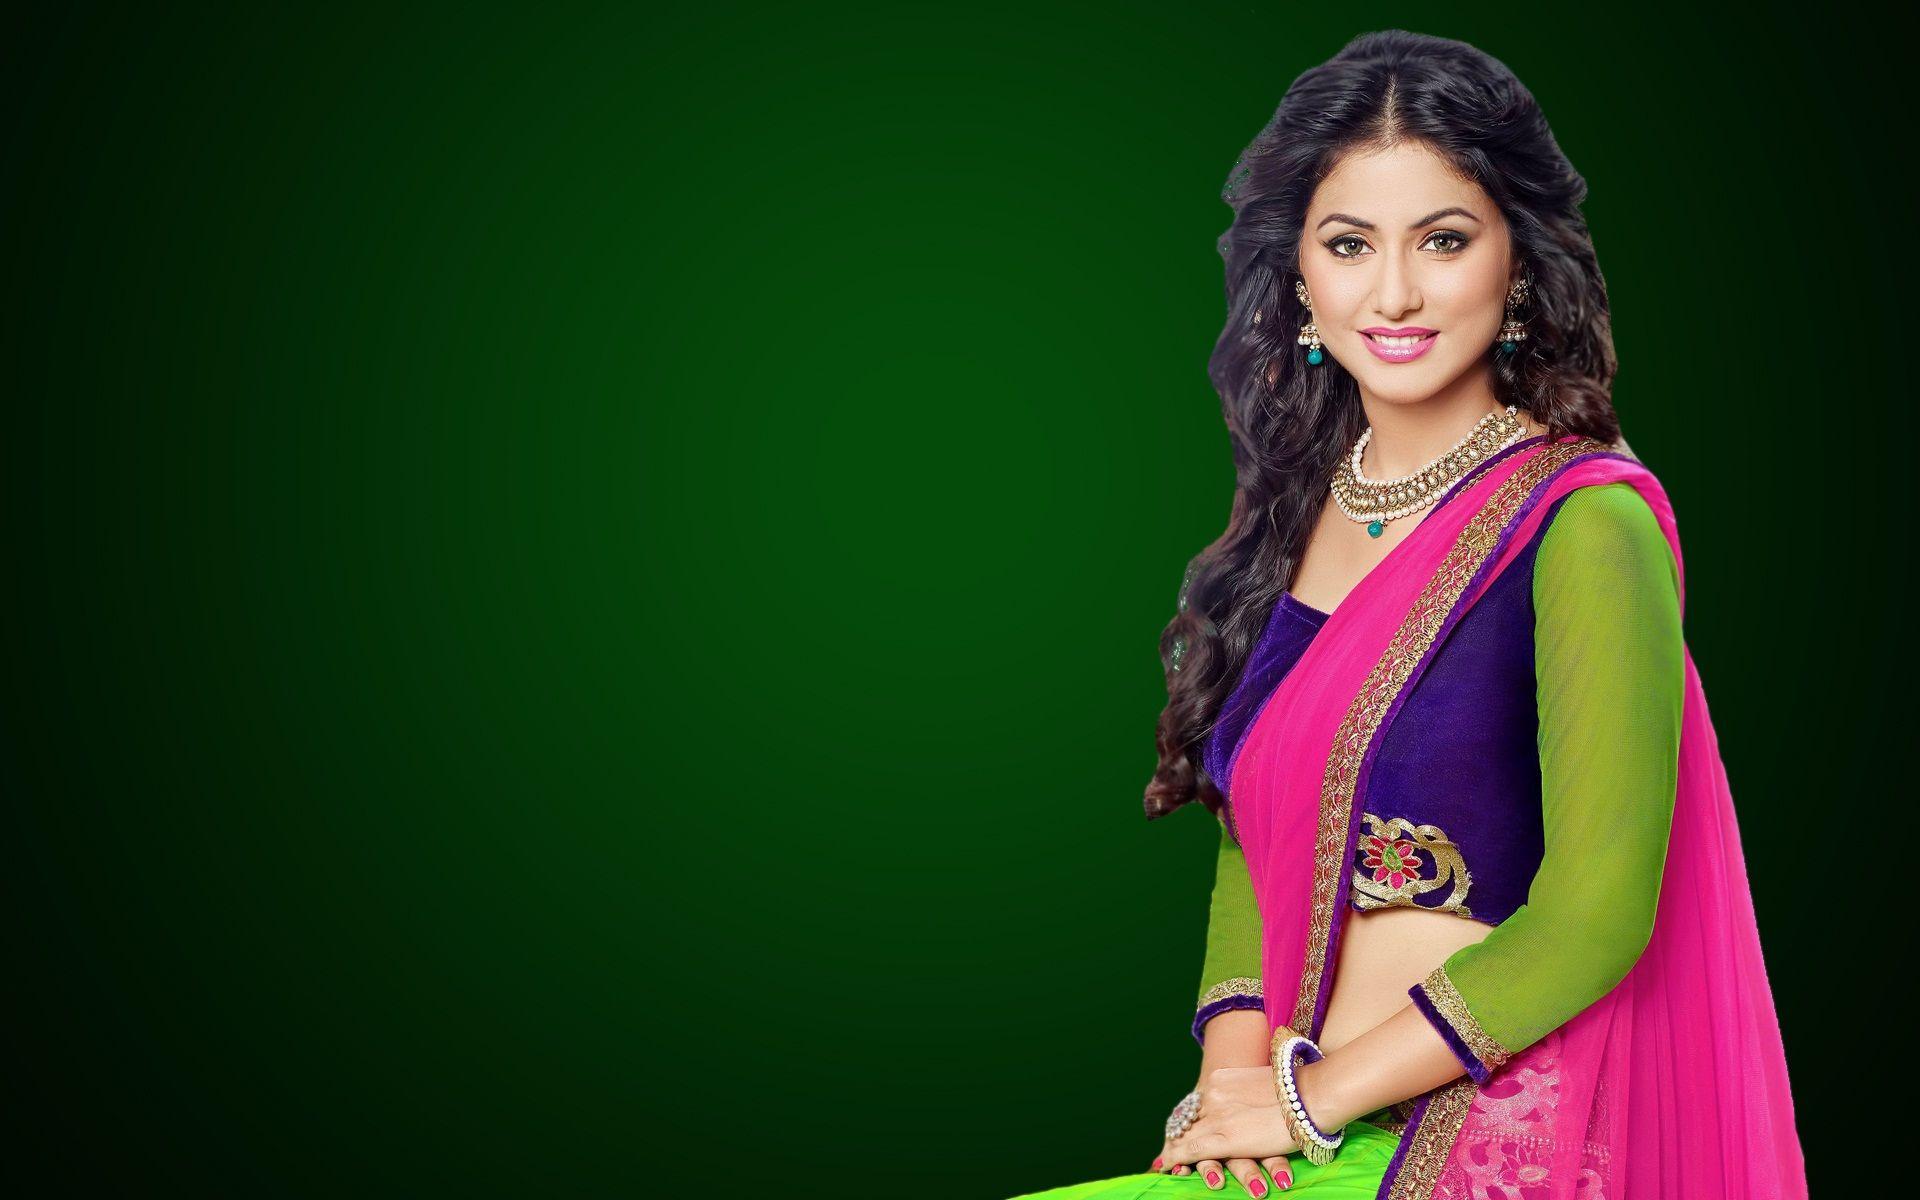  Beautiful Alia Bhatt in Saree HD Pics Alia 4k Wallpaper Free Download